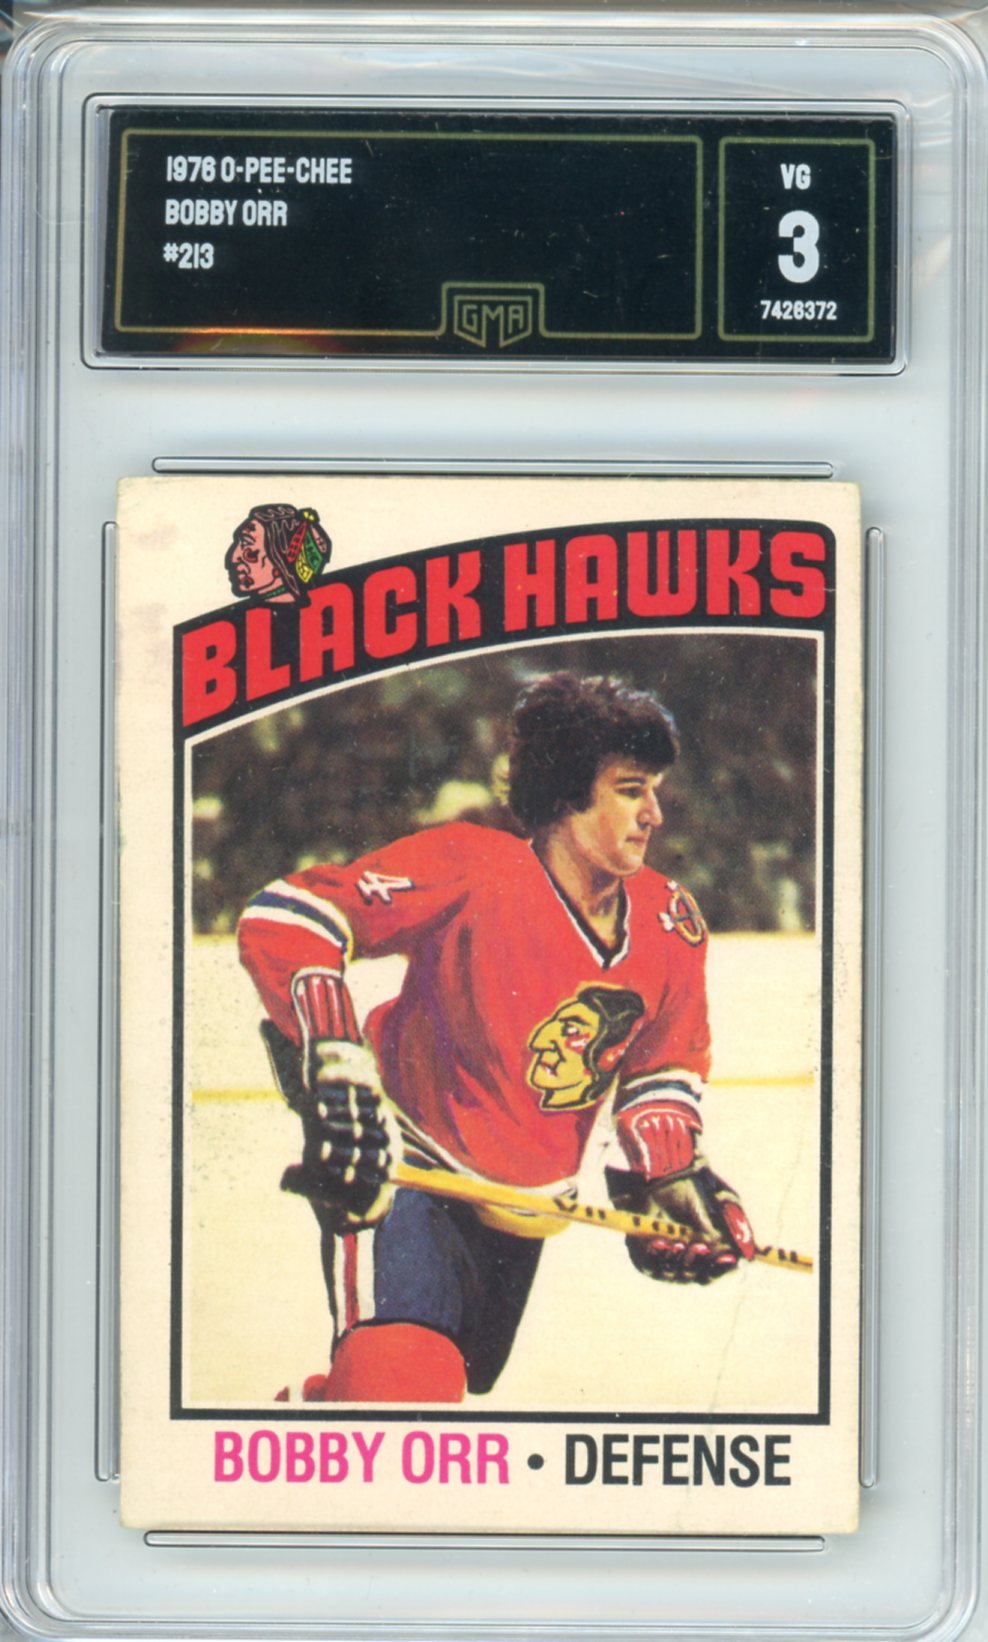 1976 OPC Bobby Orr #213 Graded Hockey Card GMA 3